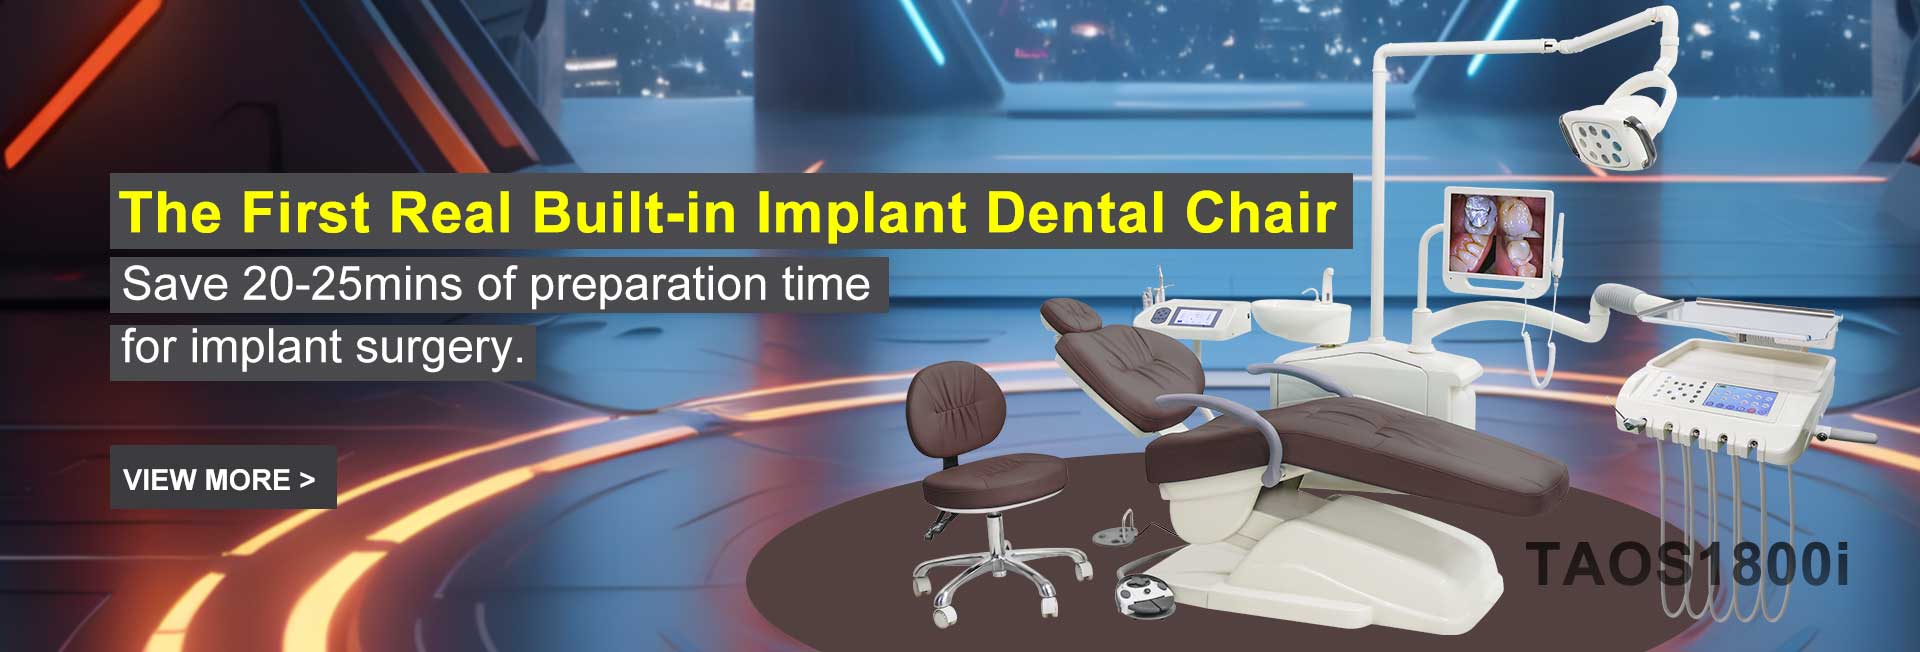 Diş implantı cerrahi koltuğu TAOS1800i